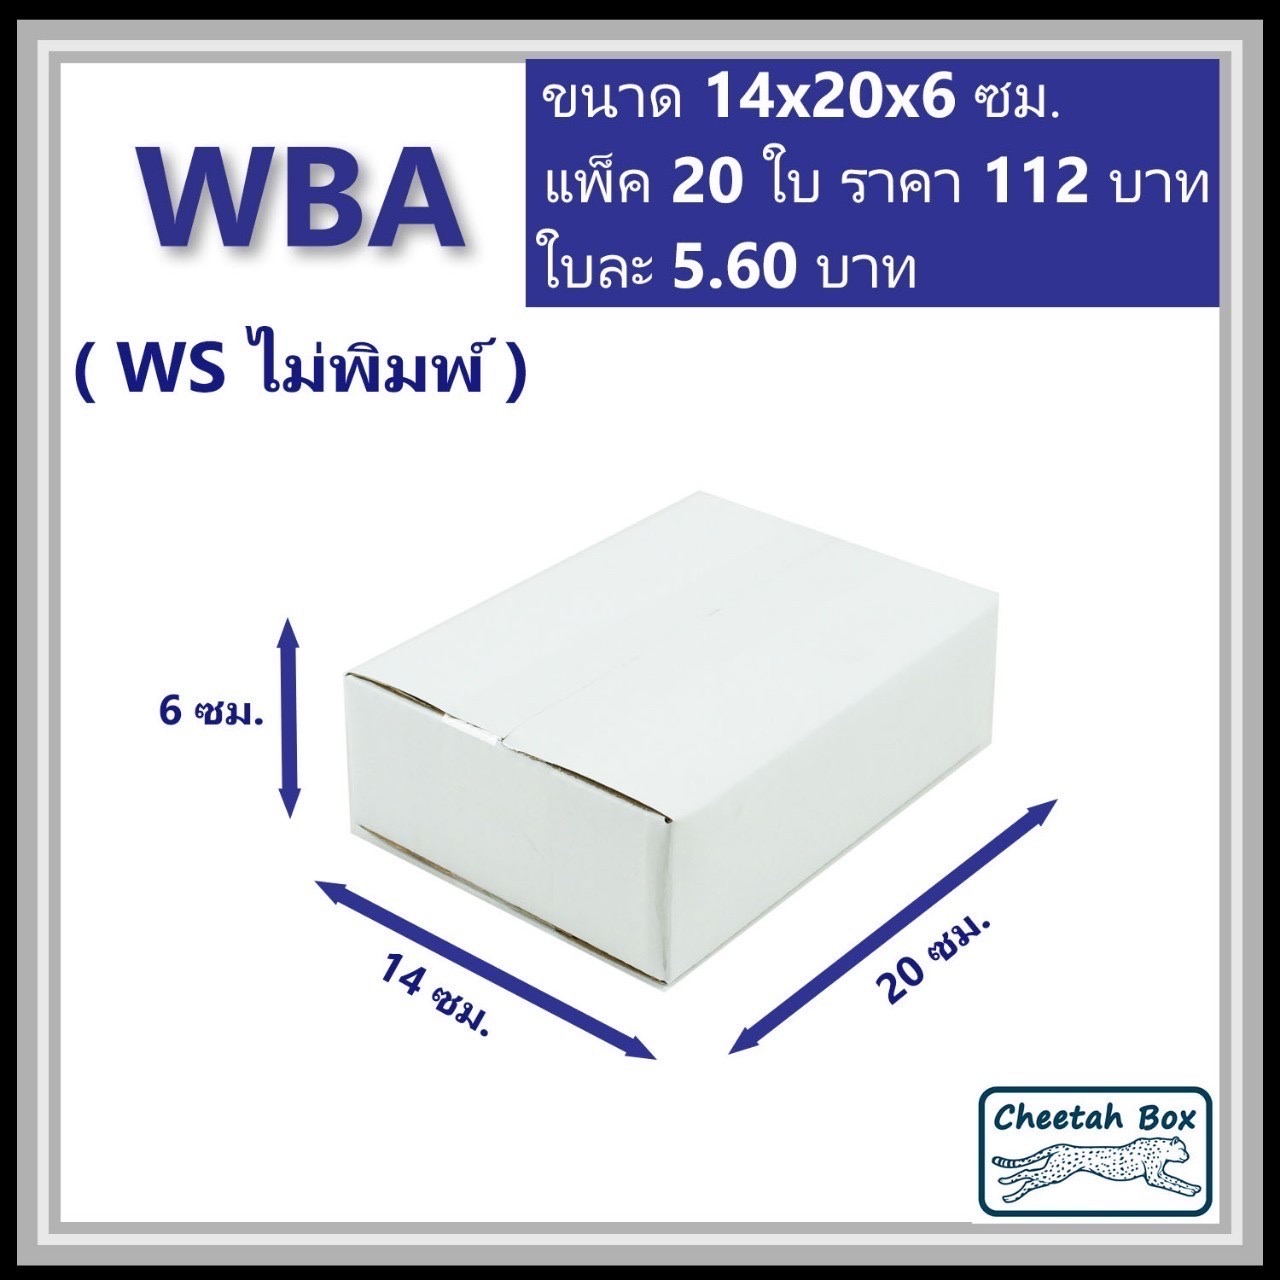 กล่องพัสดุขาว A รหัส WBA ไม่พิมพ์ (White Box) ลูกฟูก 3 ชั้น ขนาด 14W x 20L x 6H cm.